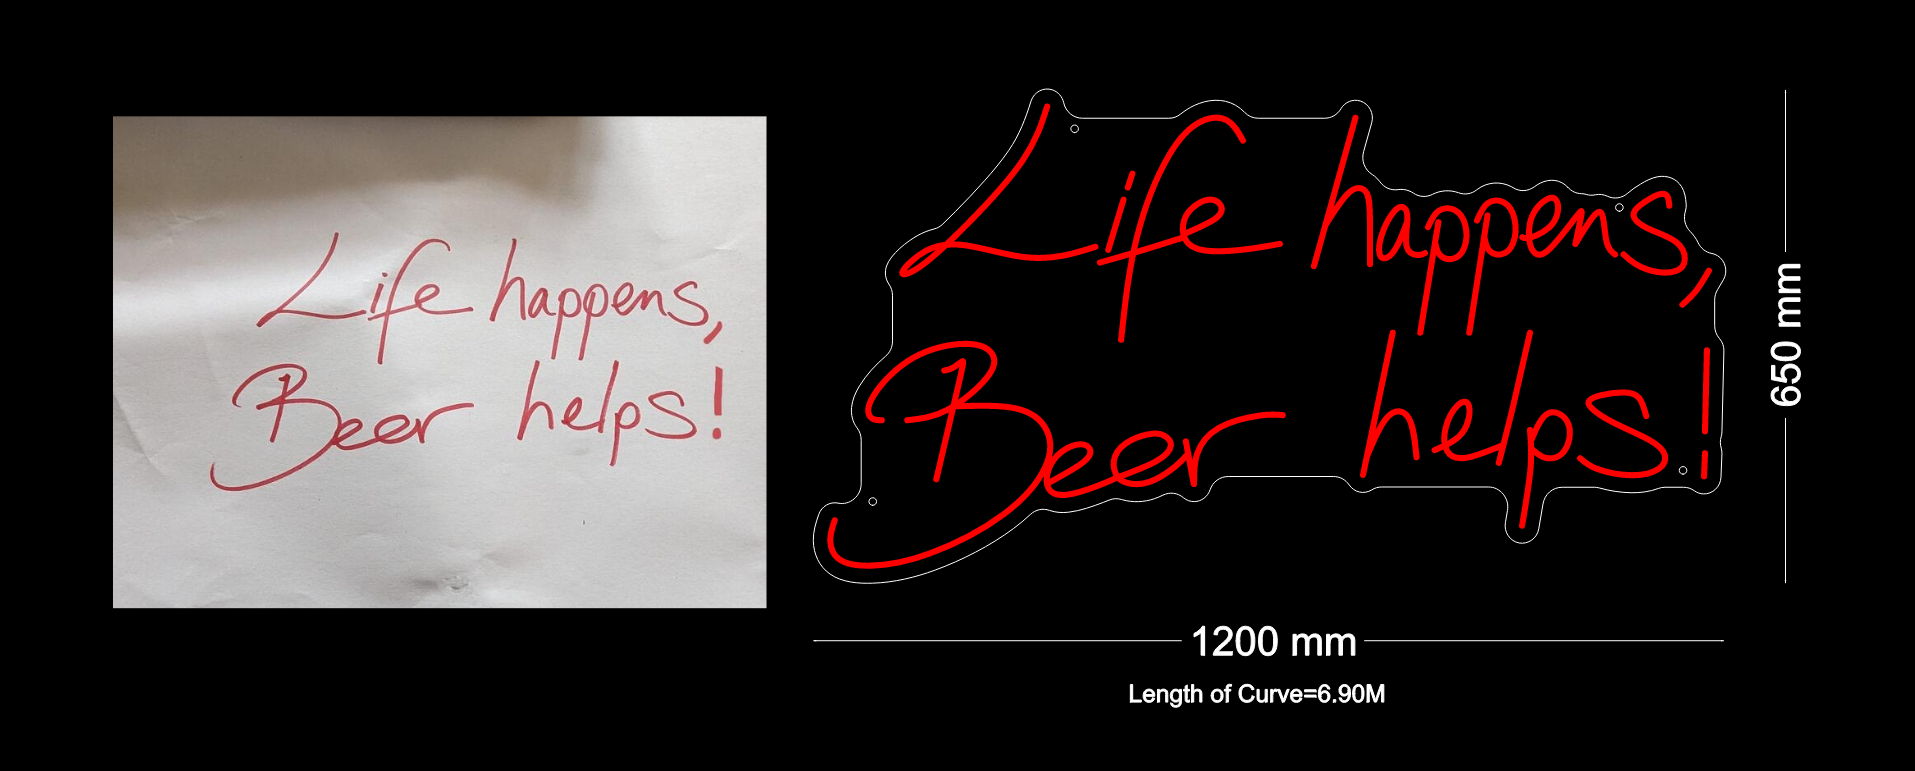 Custom Neon: Life happens, Beer helps!